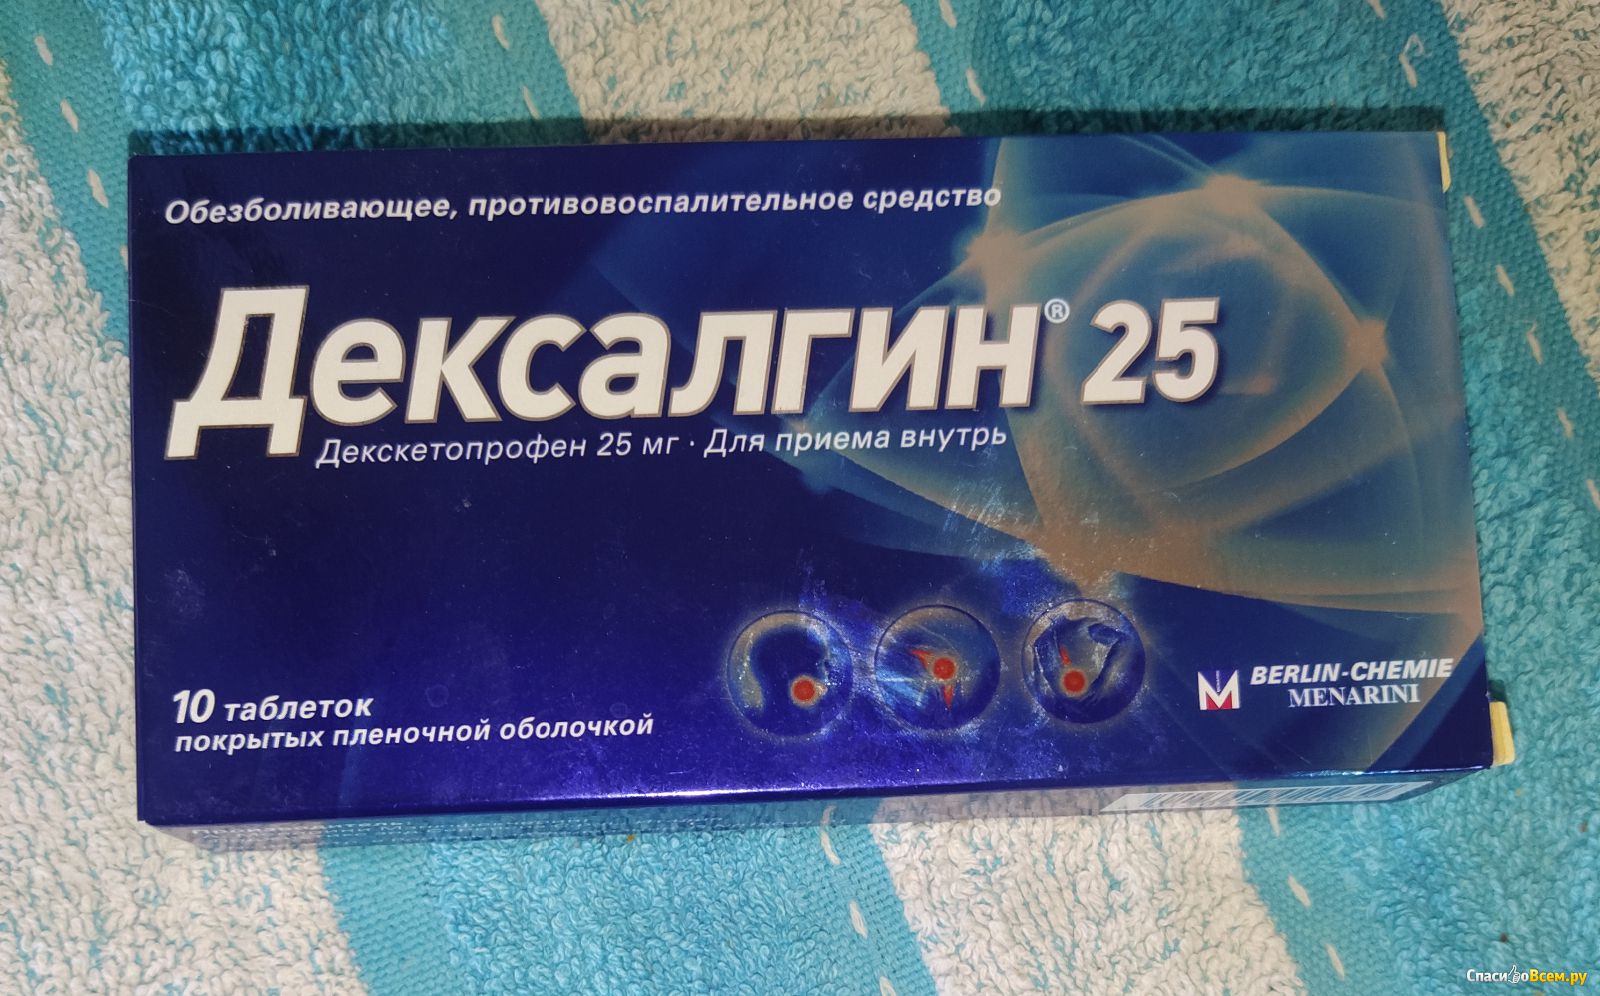 Сильные обезболивающие препараты. Обезболивающие таблетки дексалгин. Дексалгин 25 таблетки красная упаковка.